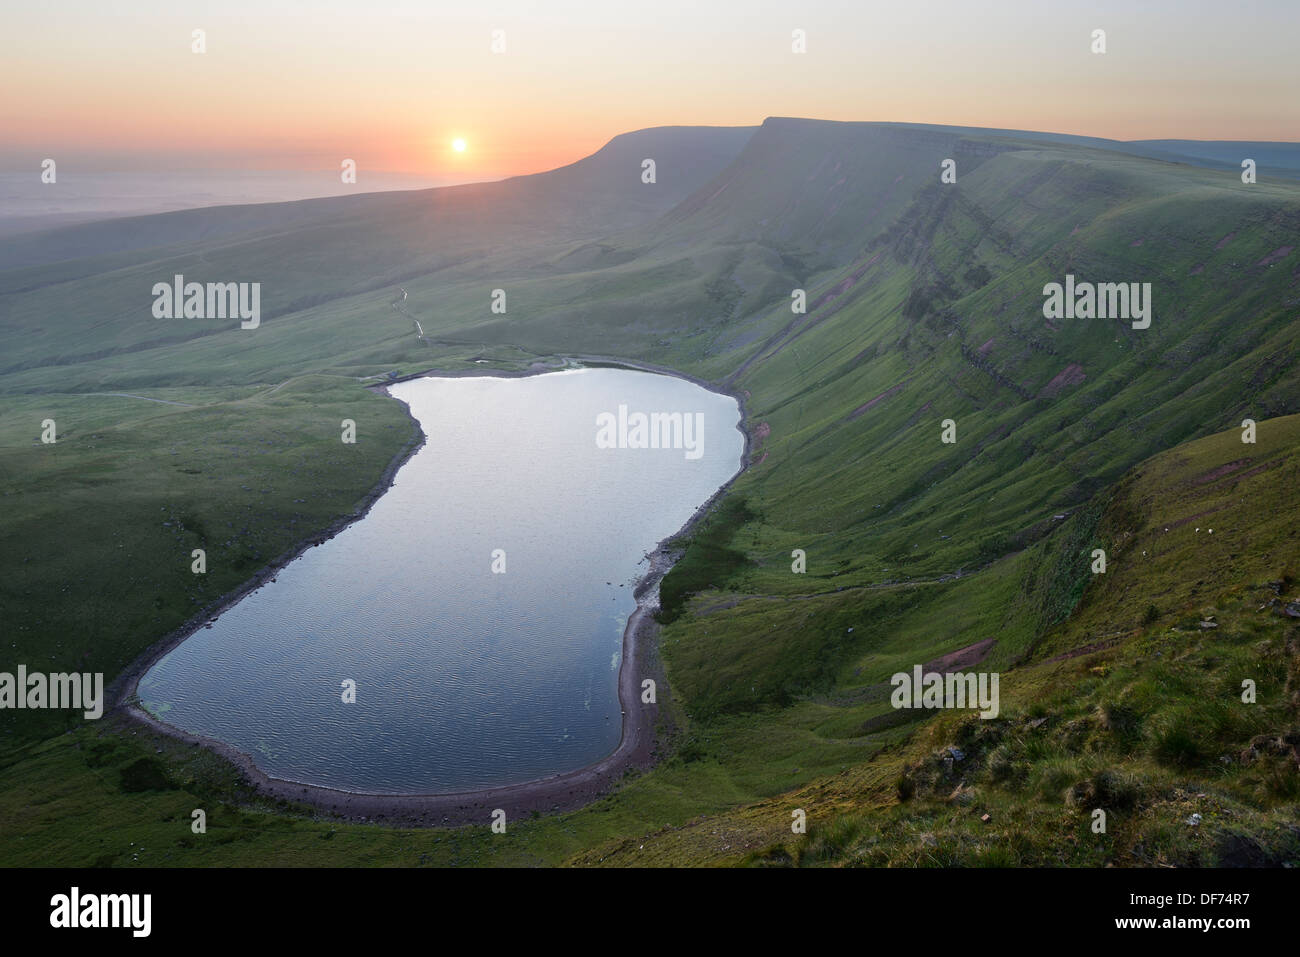 Sunrise, fotografiert von den Gipfeln des Berges schwarz, an der Grenze von Carmarthenshire und Powys, Wales, Vereinigtes Königreich. Stockfoto